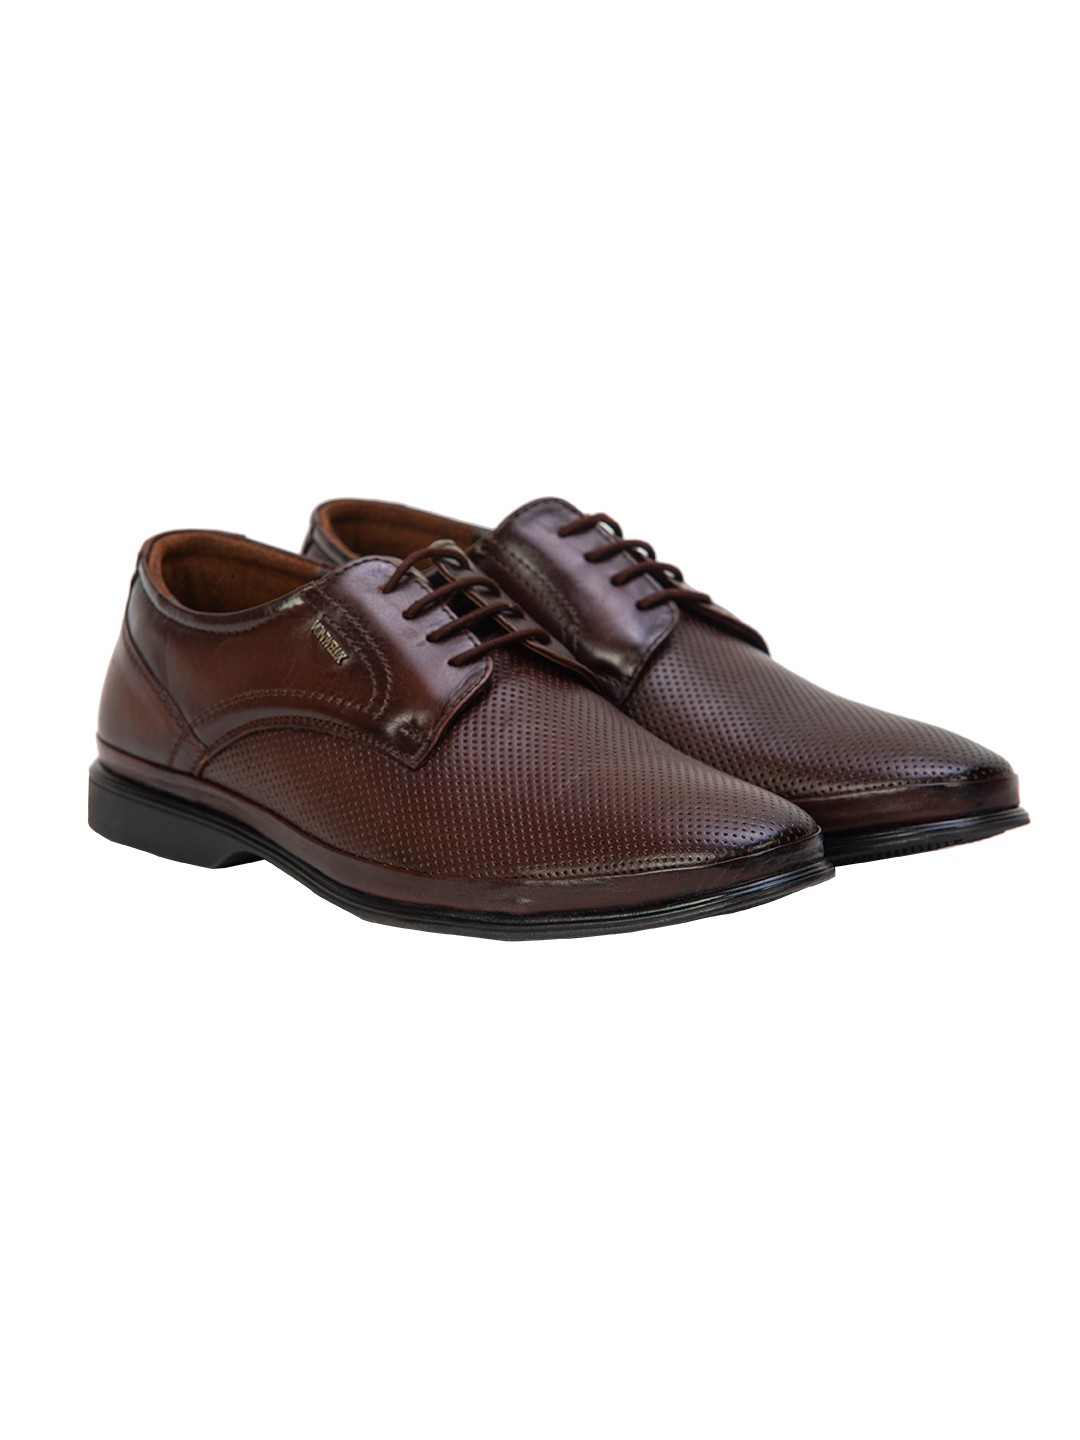 Buy Von Wellx Germany Comfort Coen Brown Shoes Online in Telangana